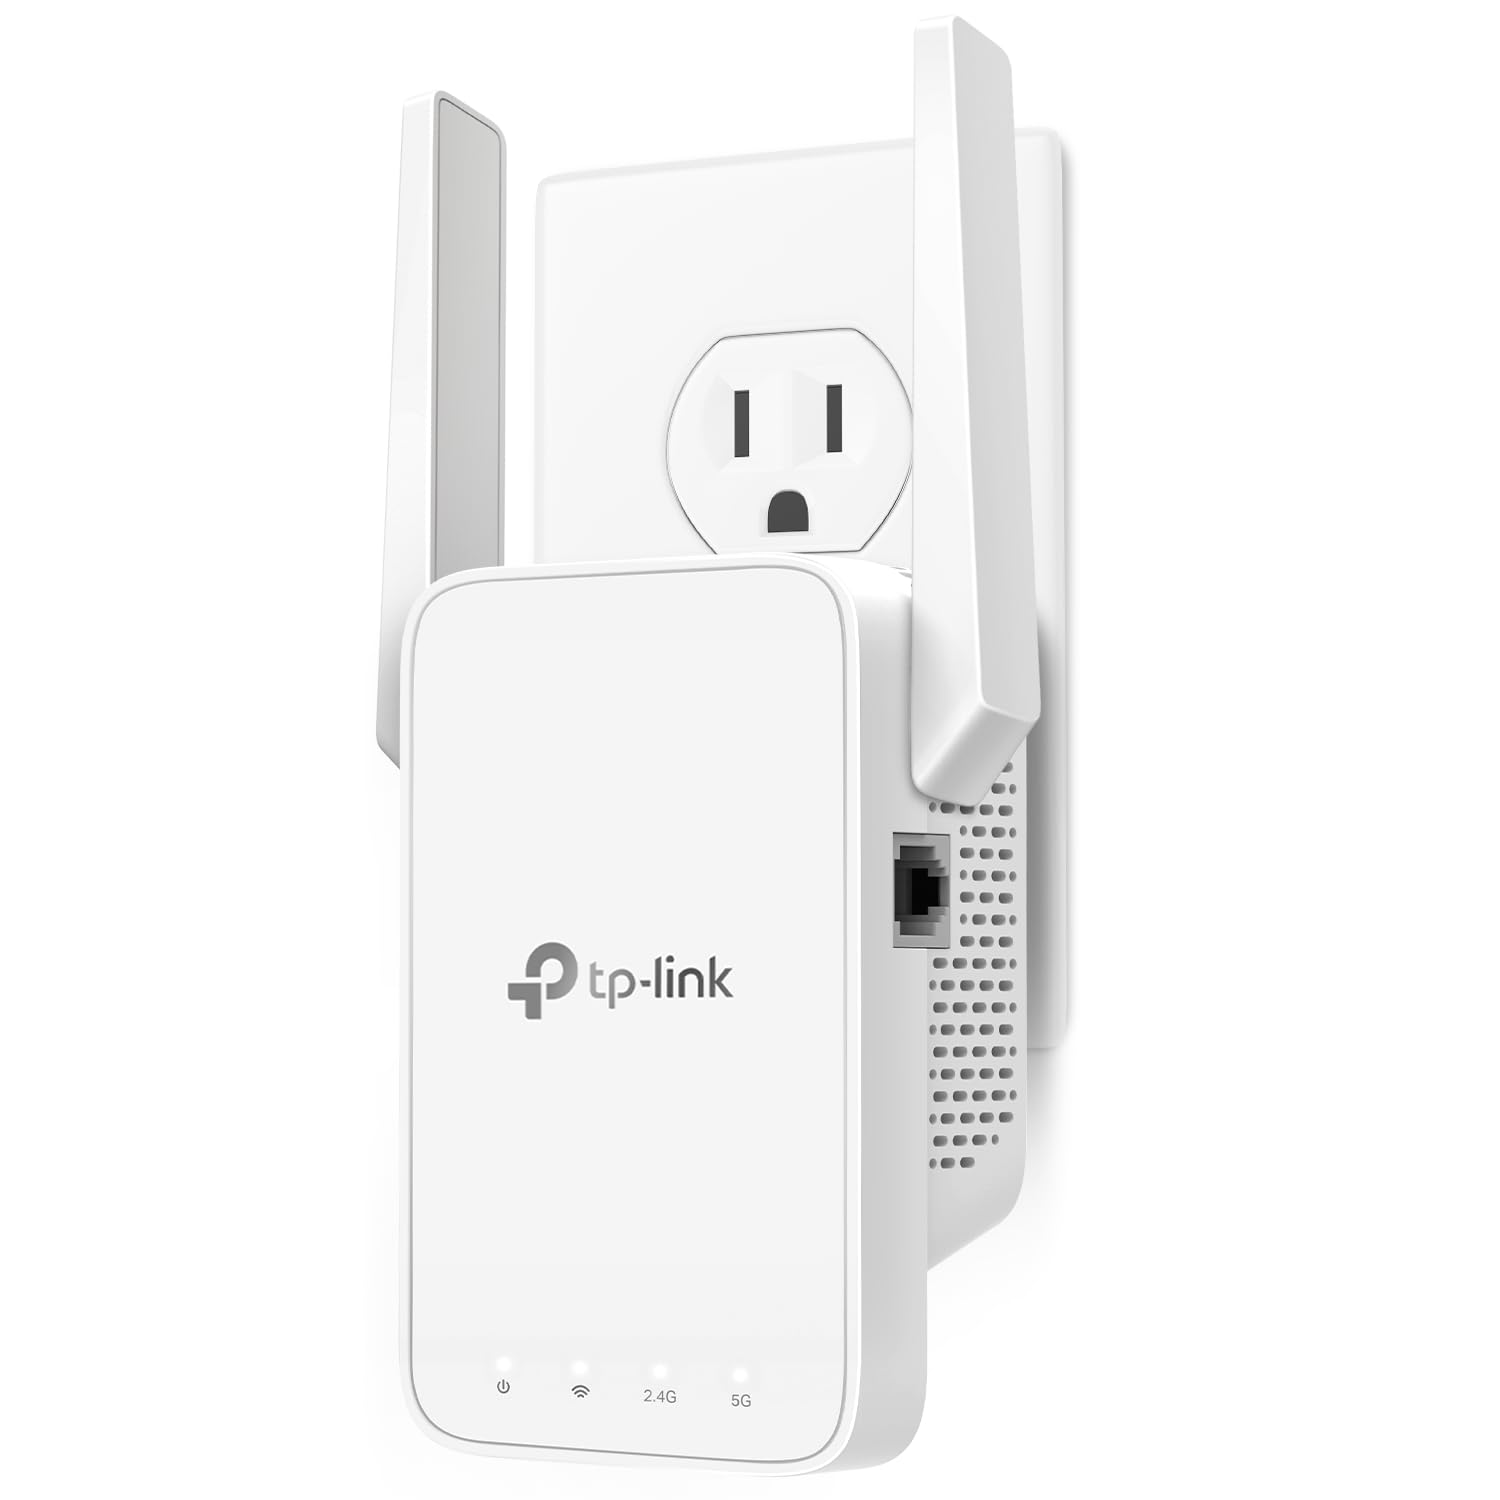 史低價！TP-Link  AC1200 WiFi  信號 延伸器，現點擊coupon后僅售$19.99